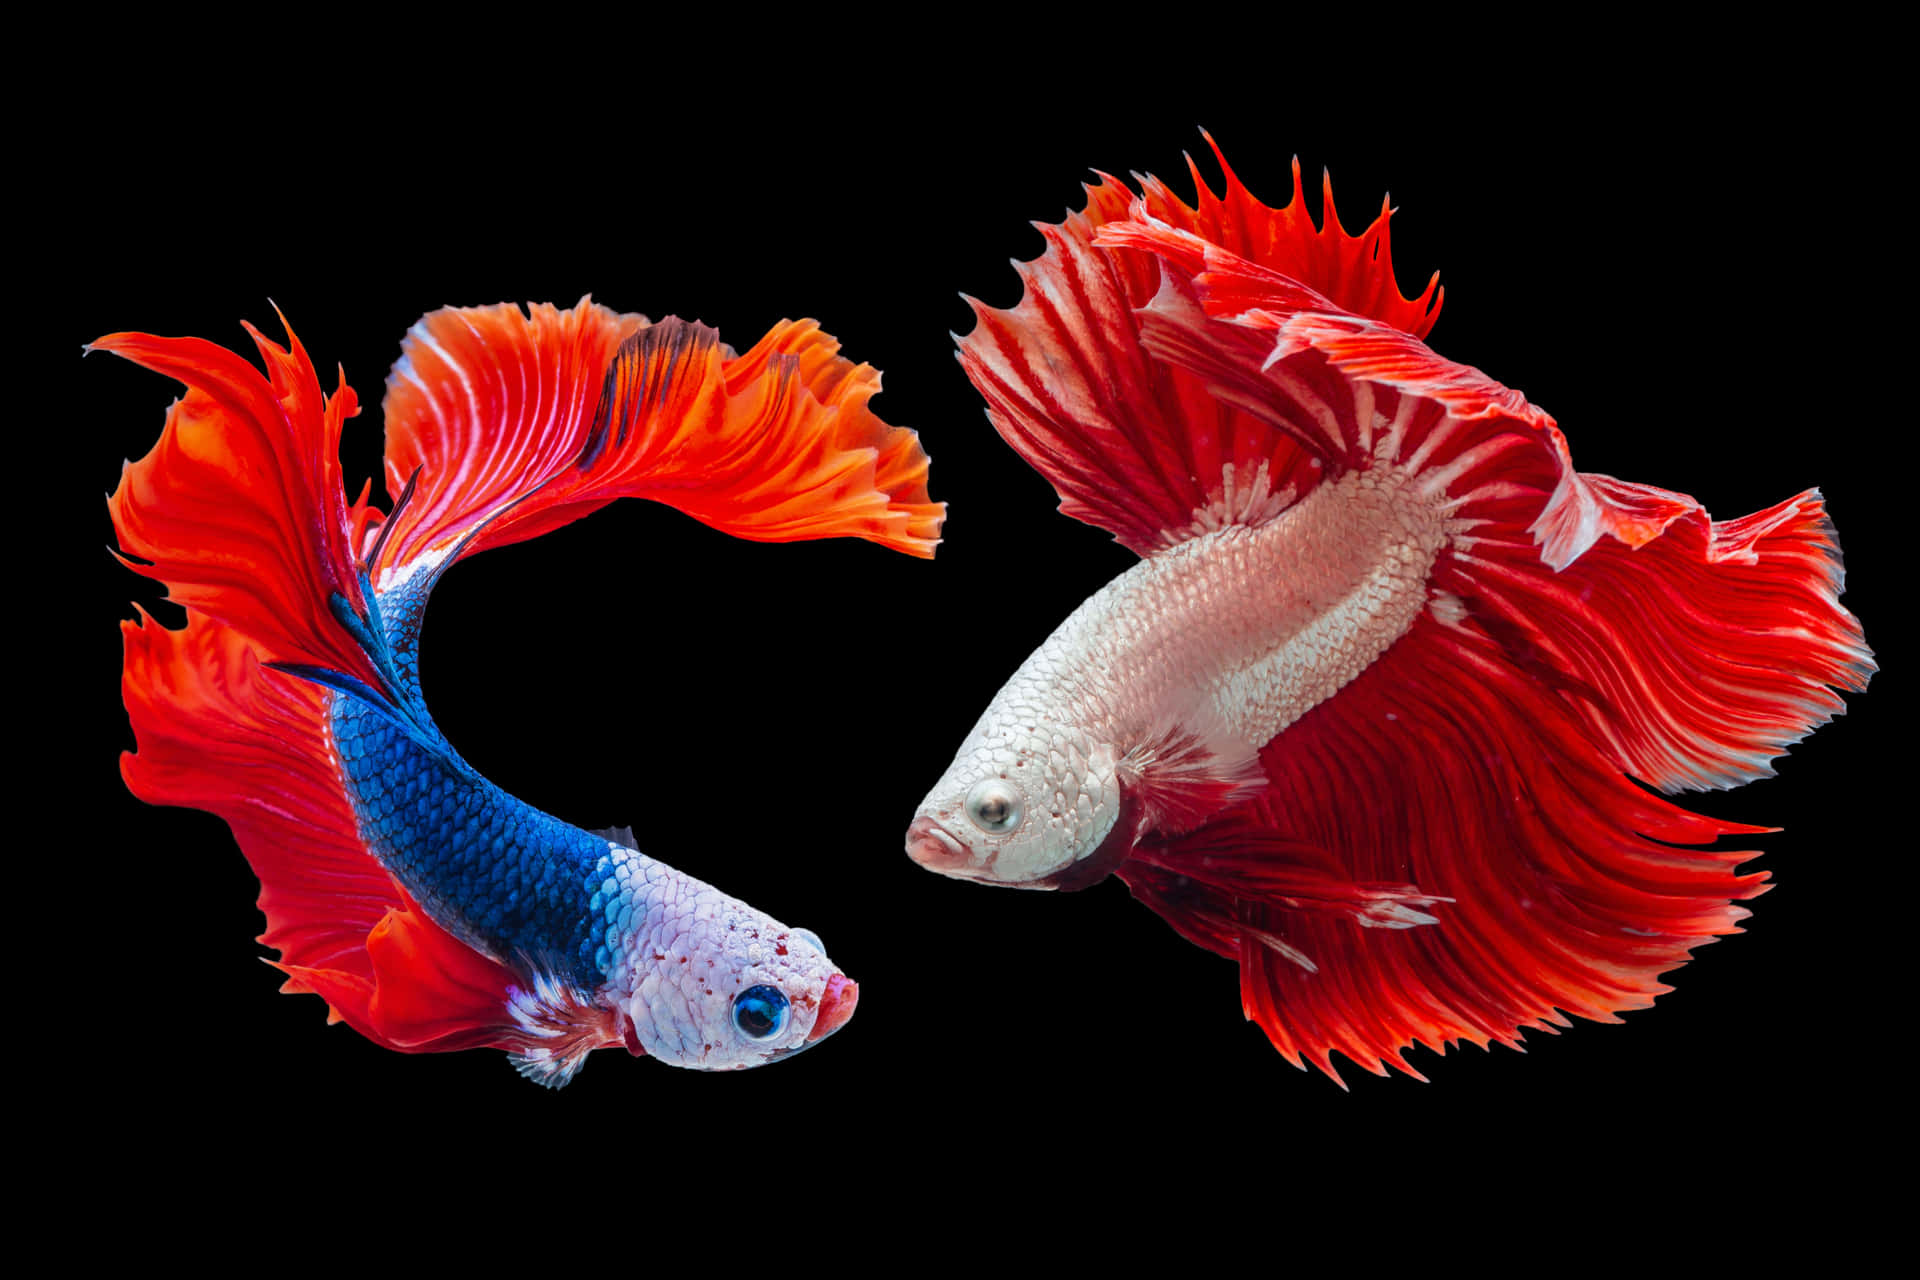 Vibrant fish scales up close Wallpaper